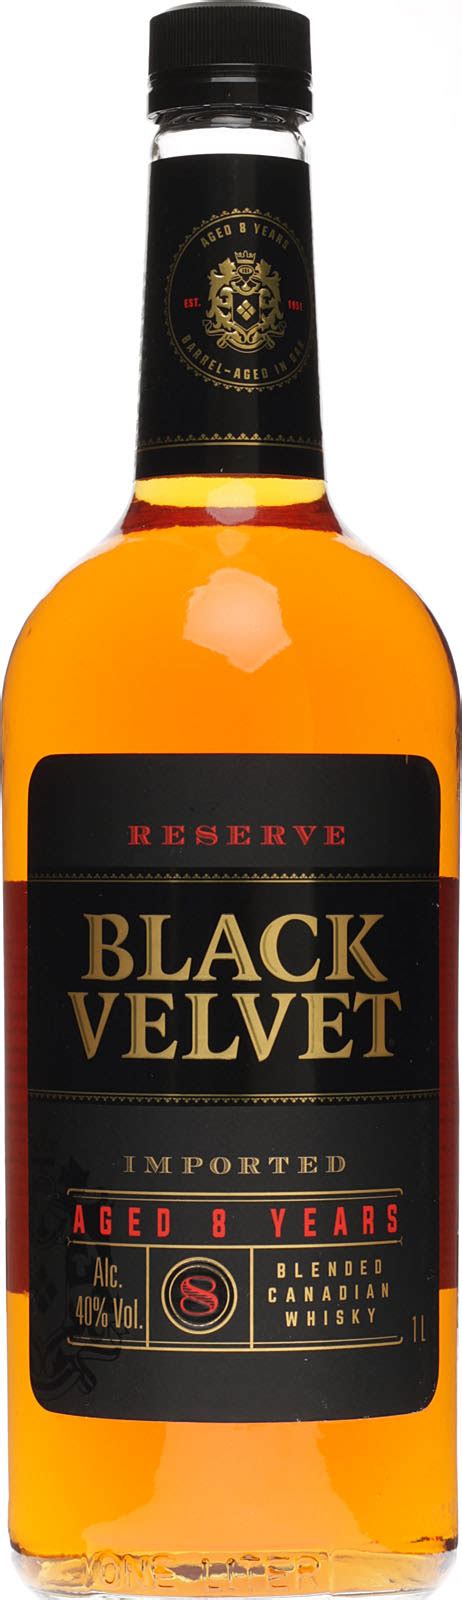 Black Velvet Reserve Blended Canadian Whisky Kaufen